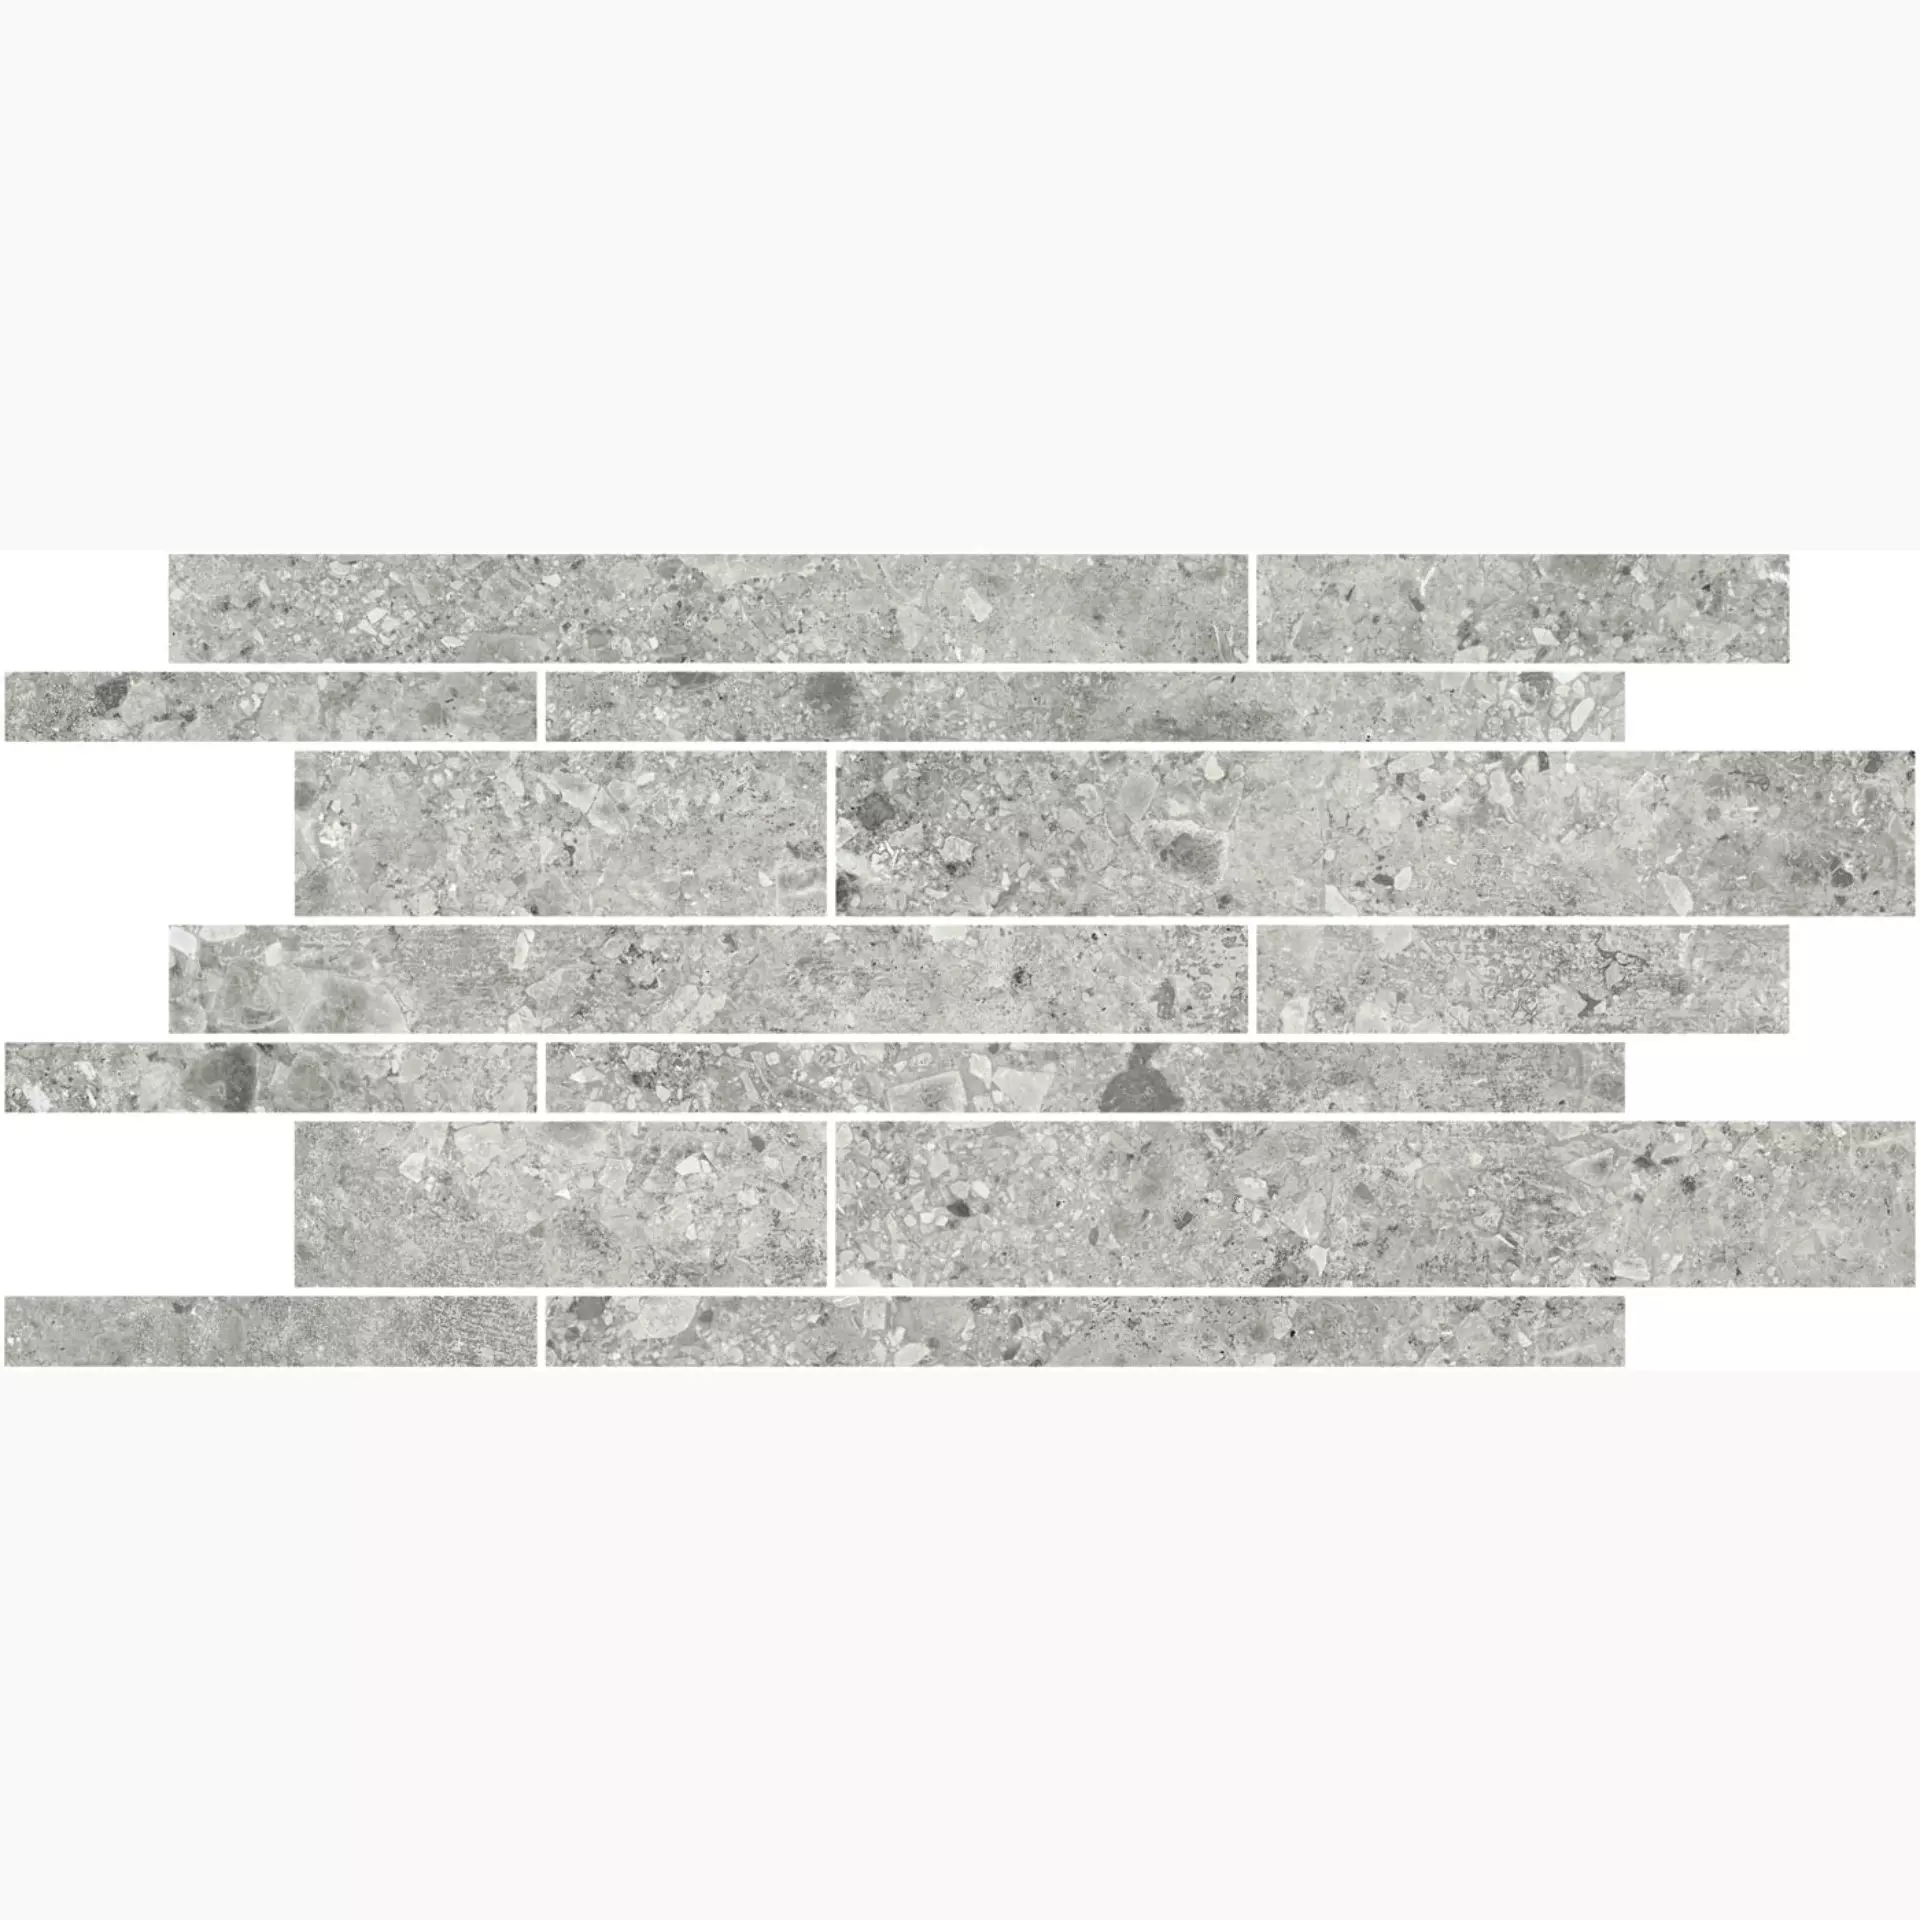 Magica Ceppo Grey Matt Grey MACE02M36N matt 30x60cm Brick Wall 9mm